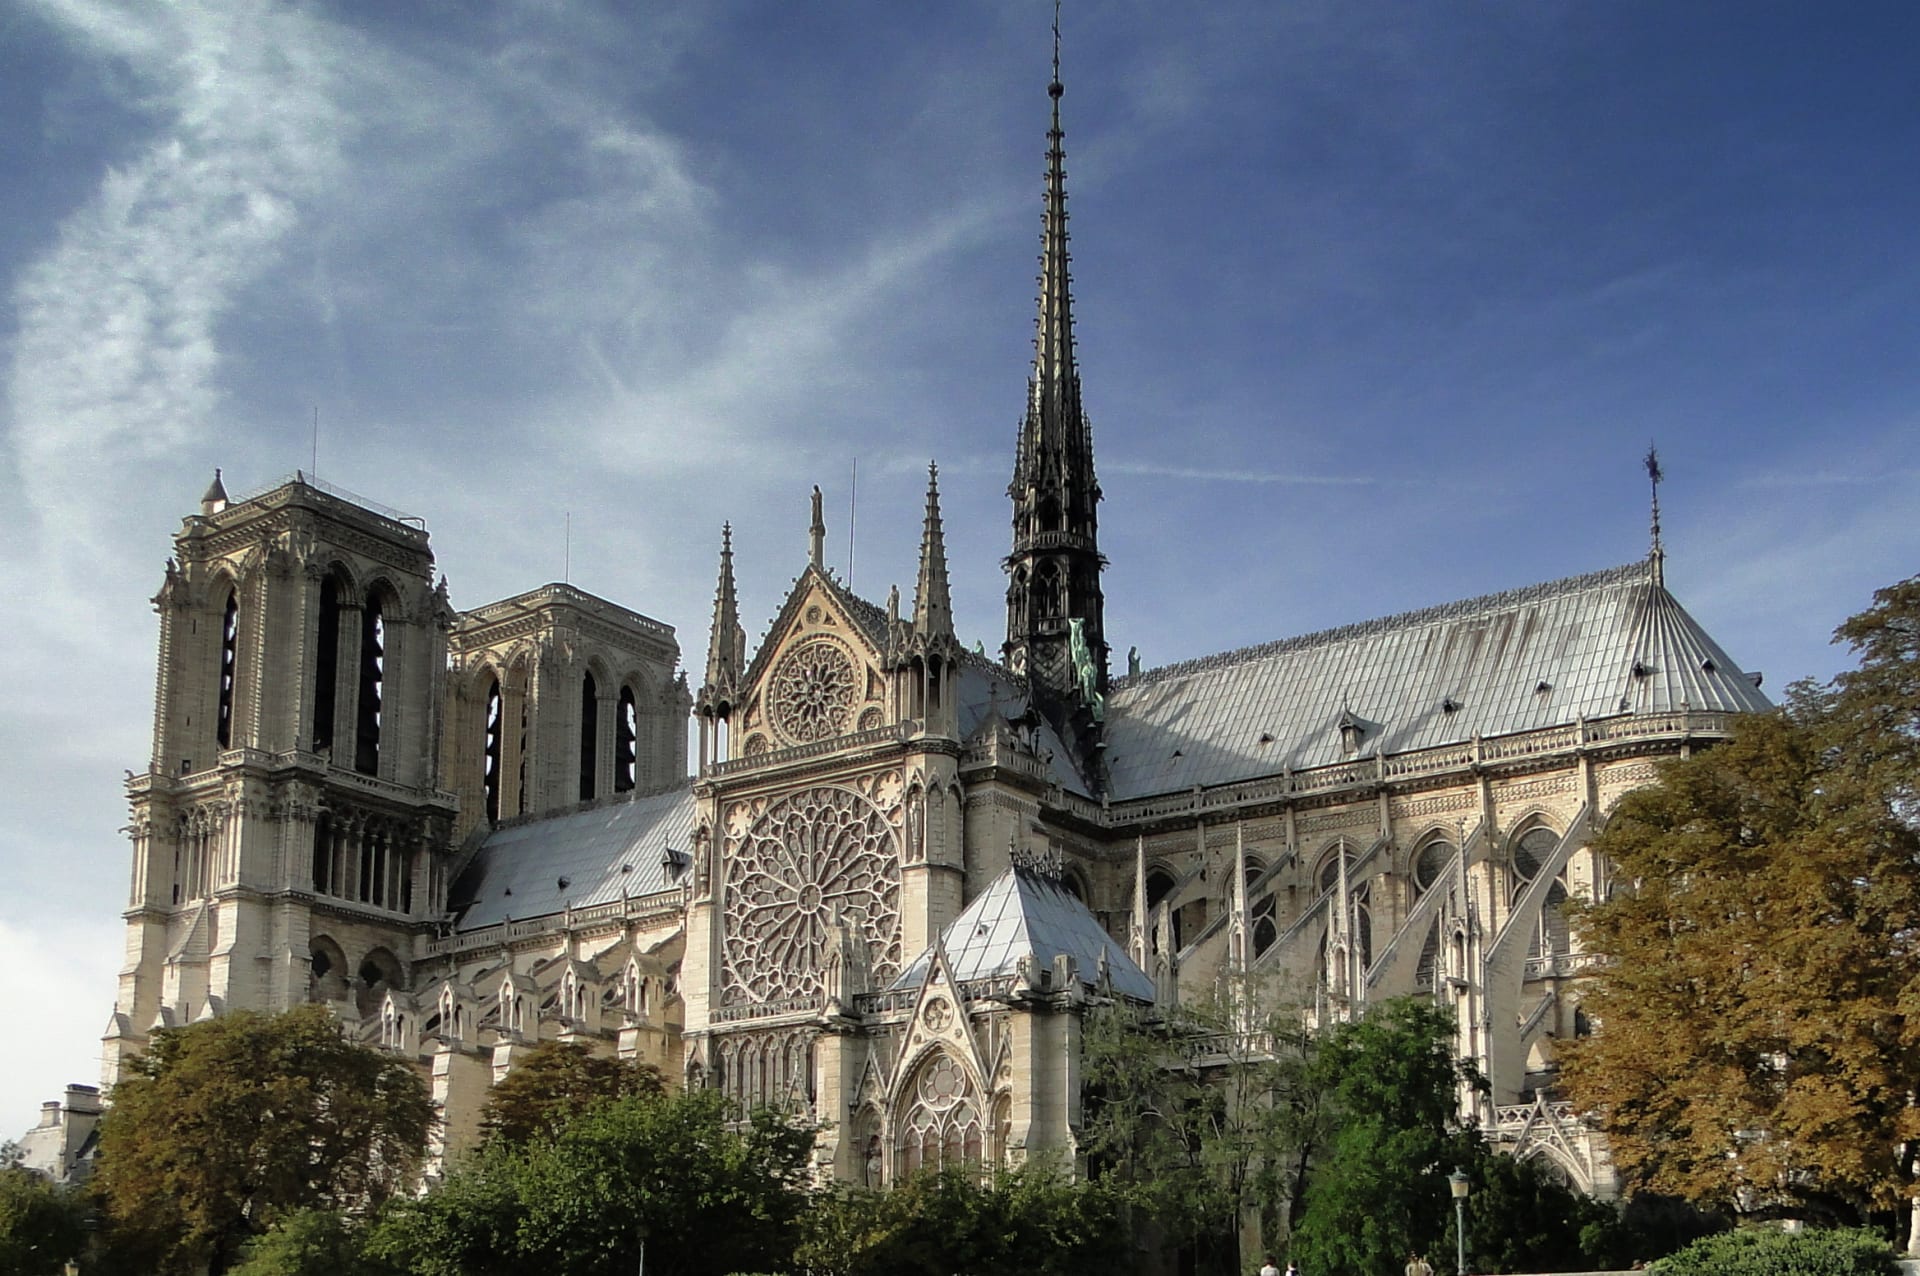 Katedrála Notre-Dame v Paříži sloužila jako vzor pro stavbu katedrál po celé Evropě